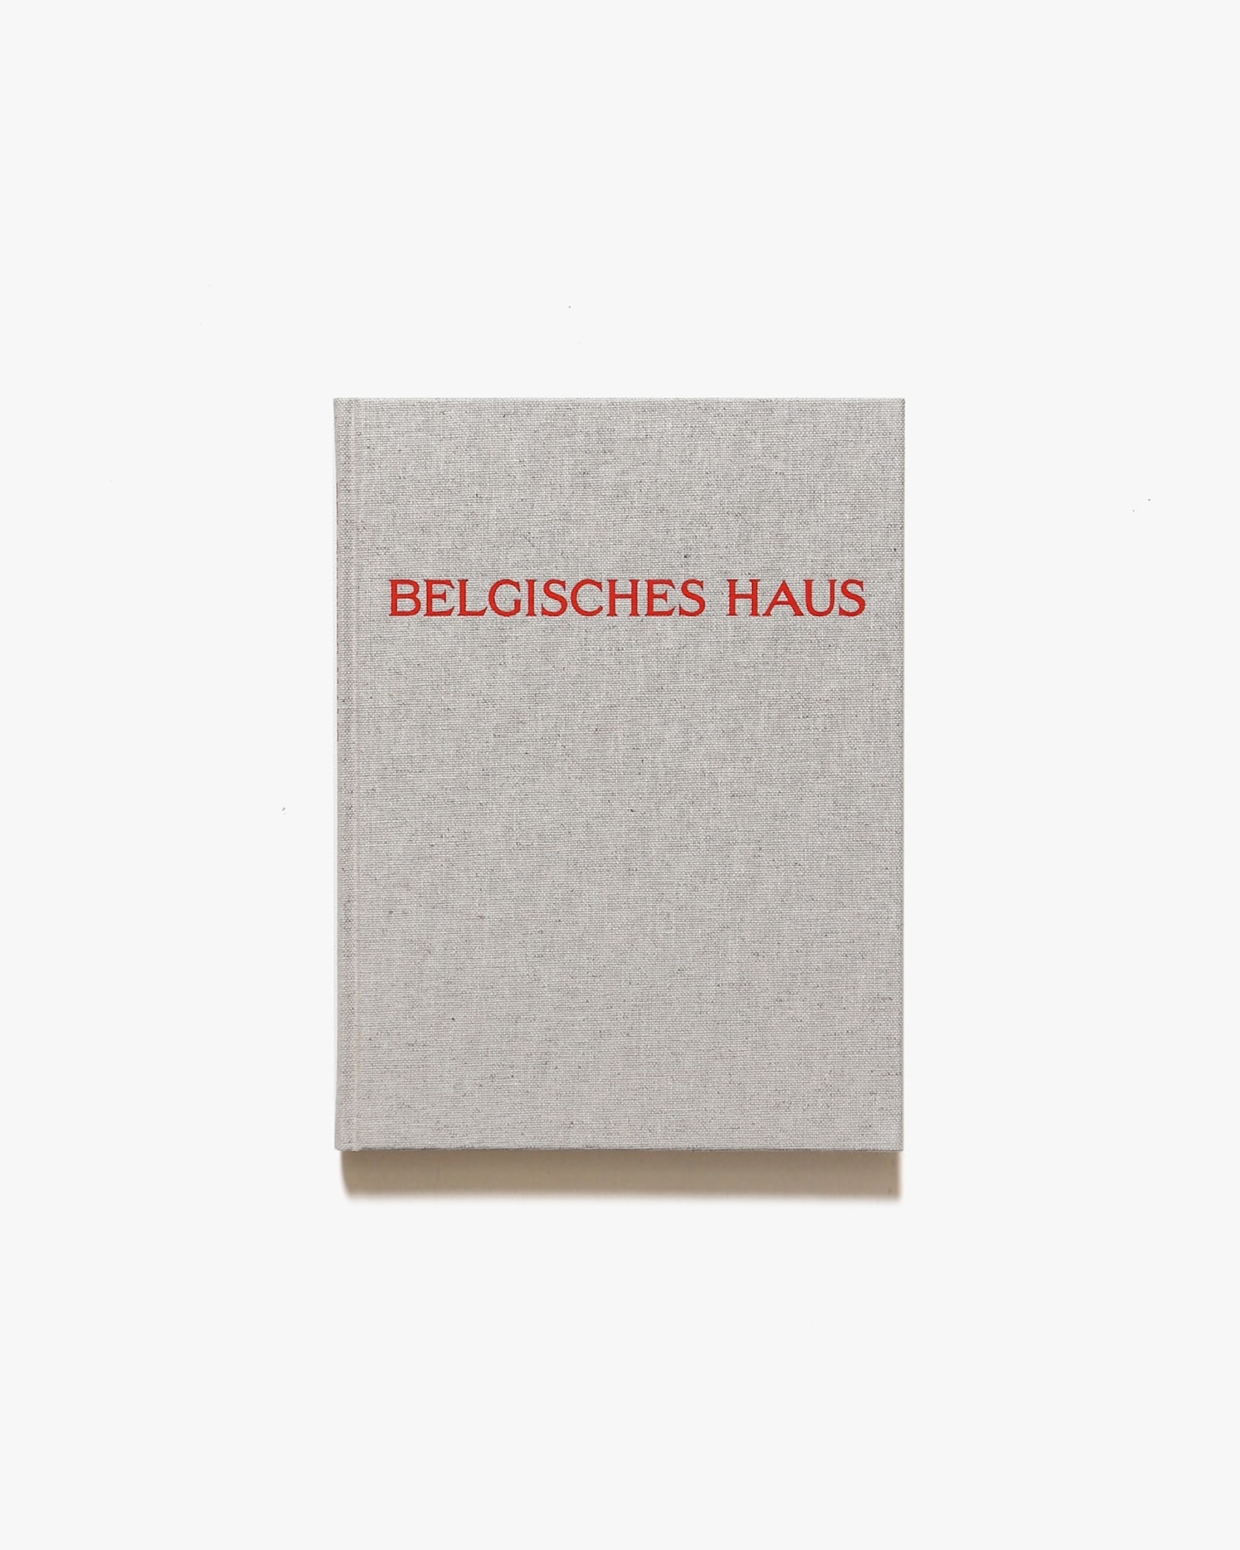 Candida Hofer: Belgisches Haus | カンディダ・へーファー